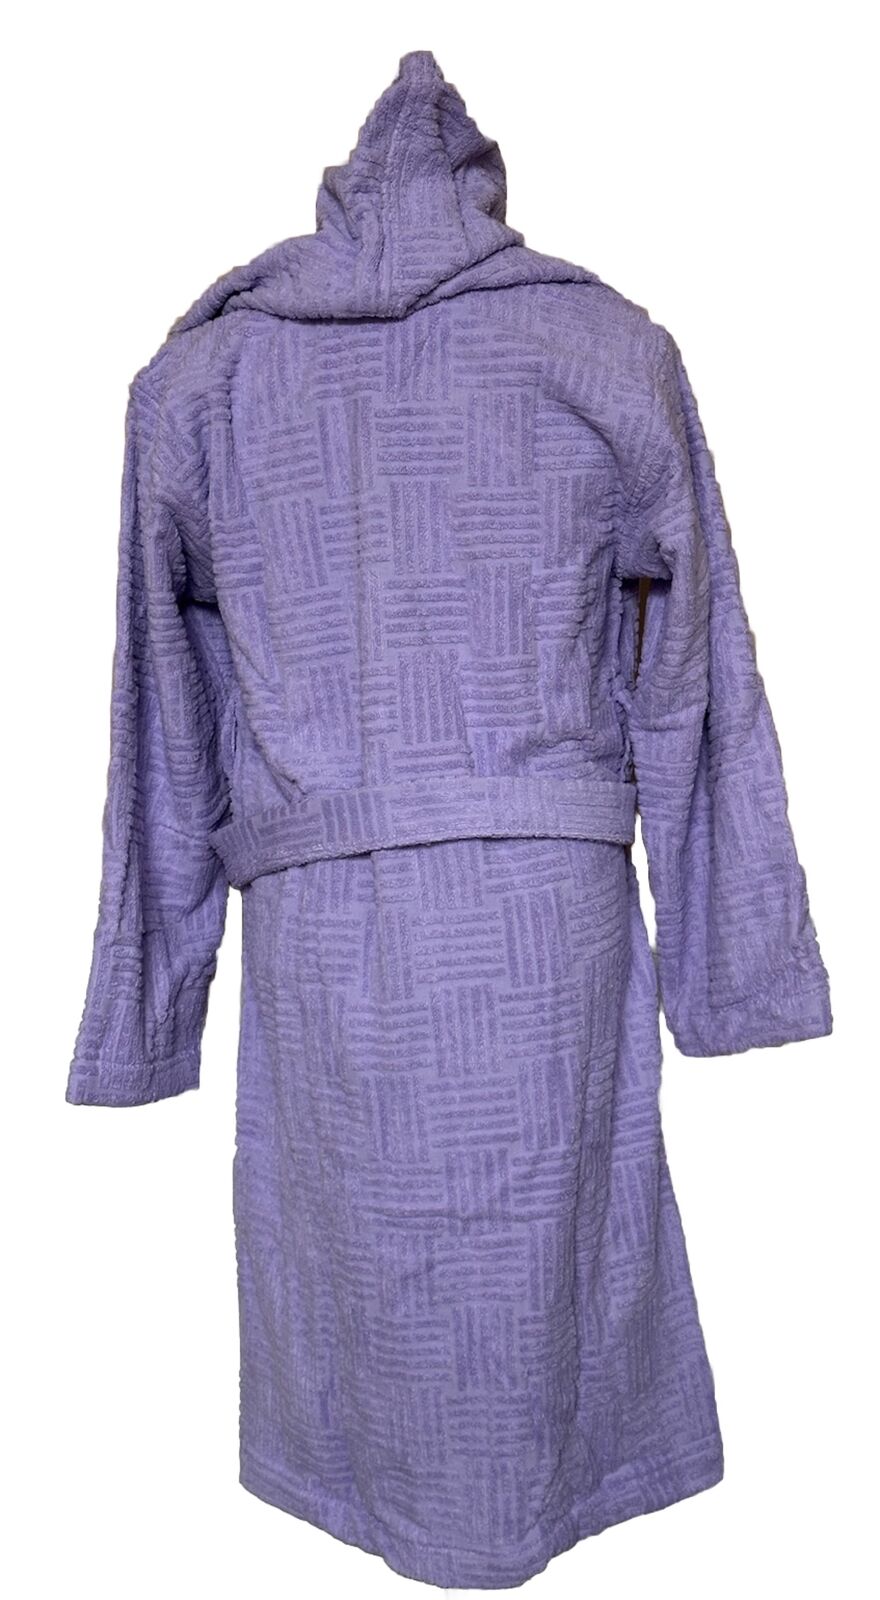 NWT 700 долларов США Bottega Veneta Хлопковый махровый банный халат, темно-фиолетовый, маленький 723607 Италия